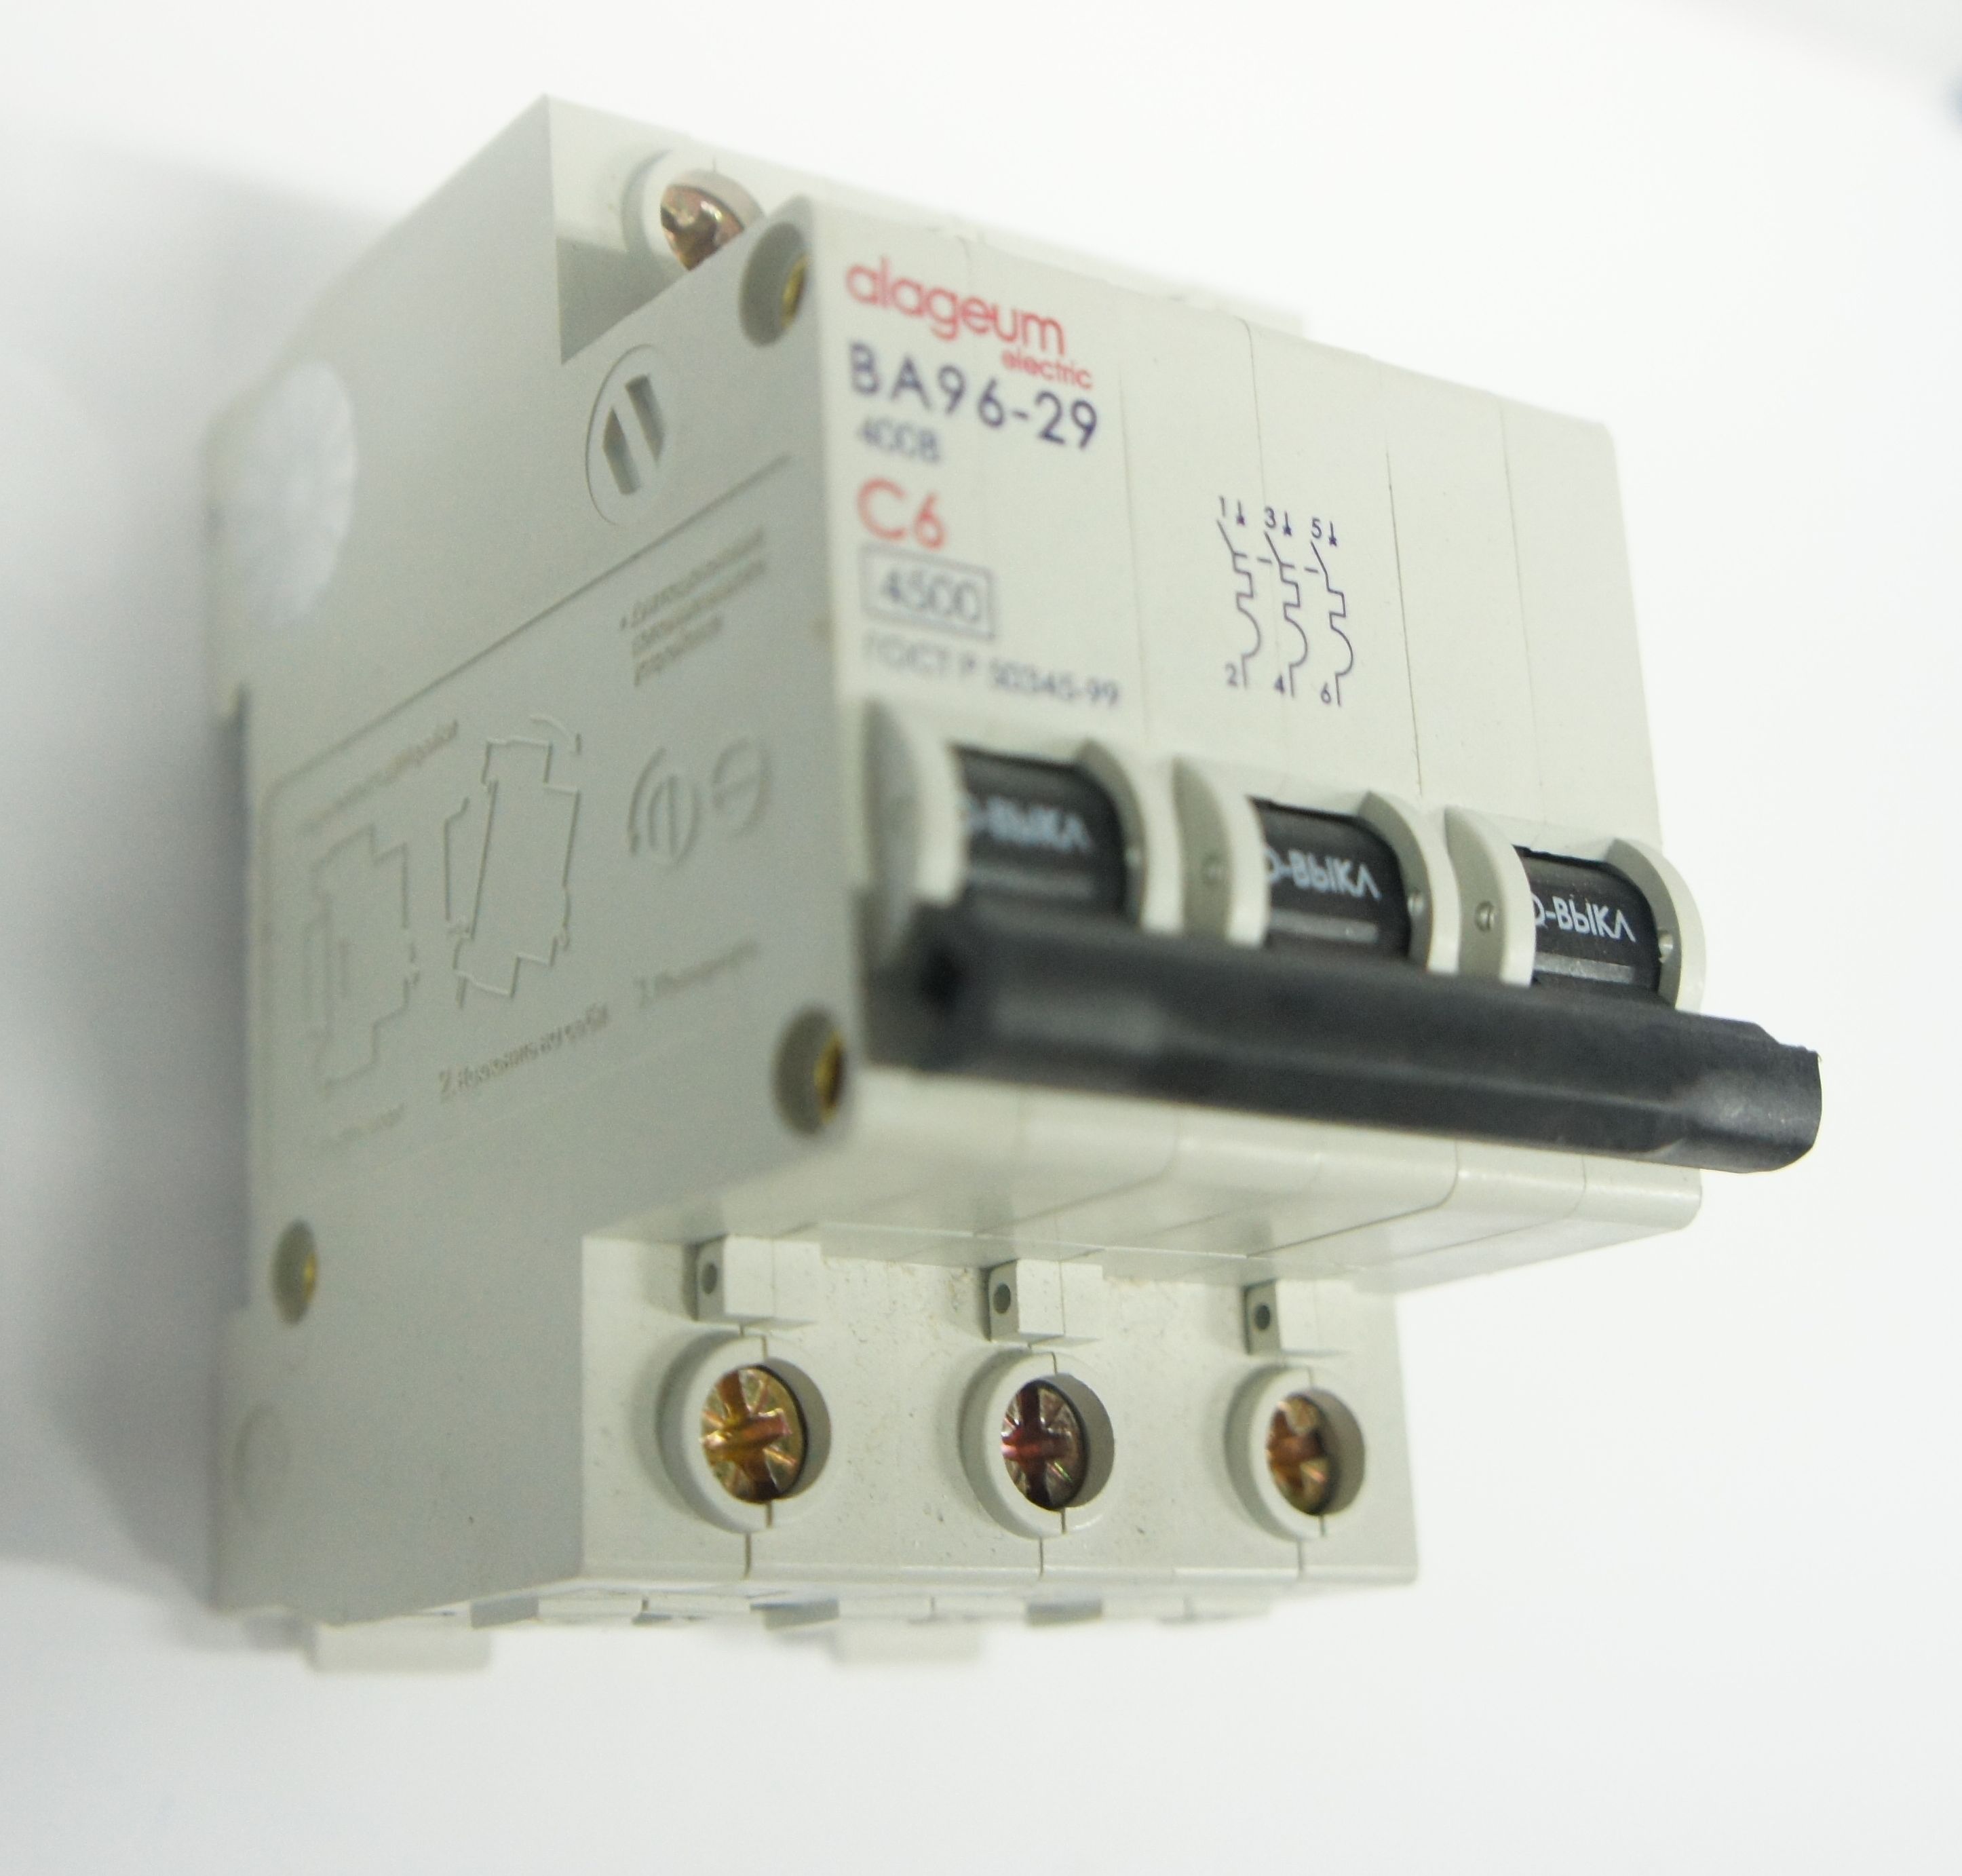 Автоматические выключатели ВА 96-29 и ВА96-100 от 220 тенге 